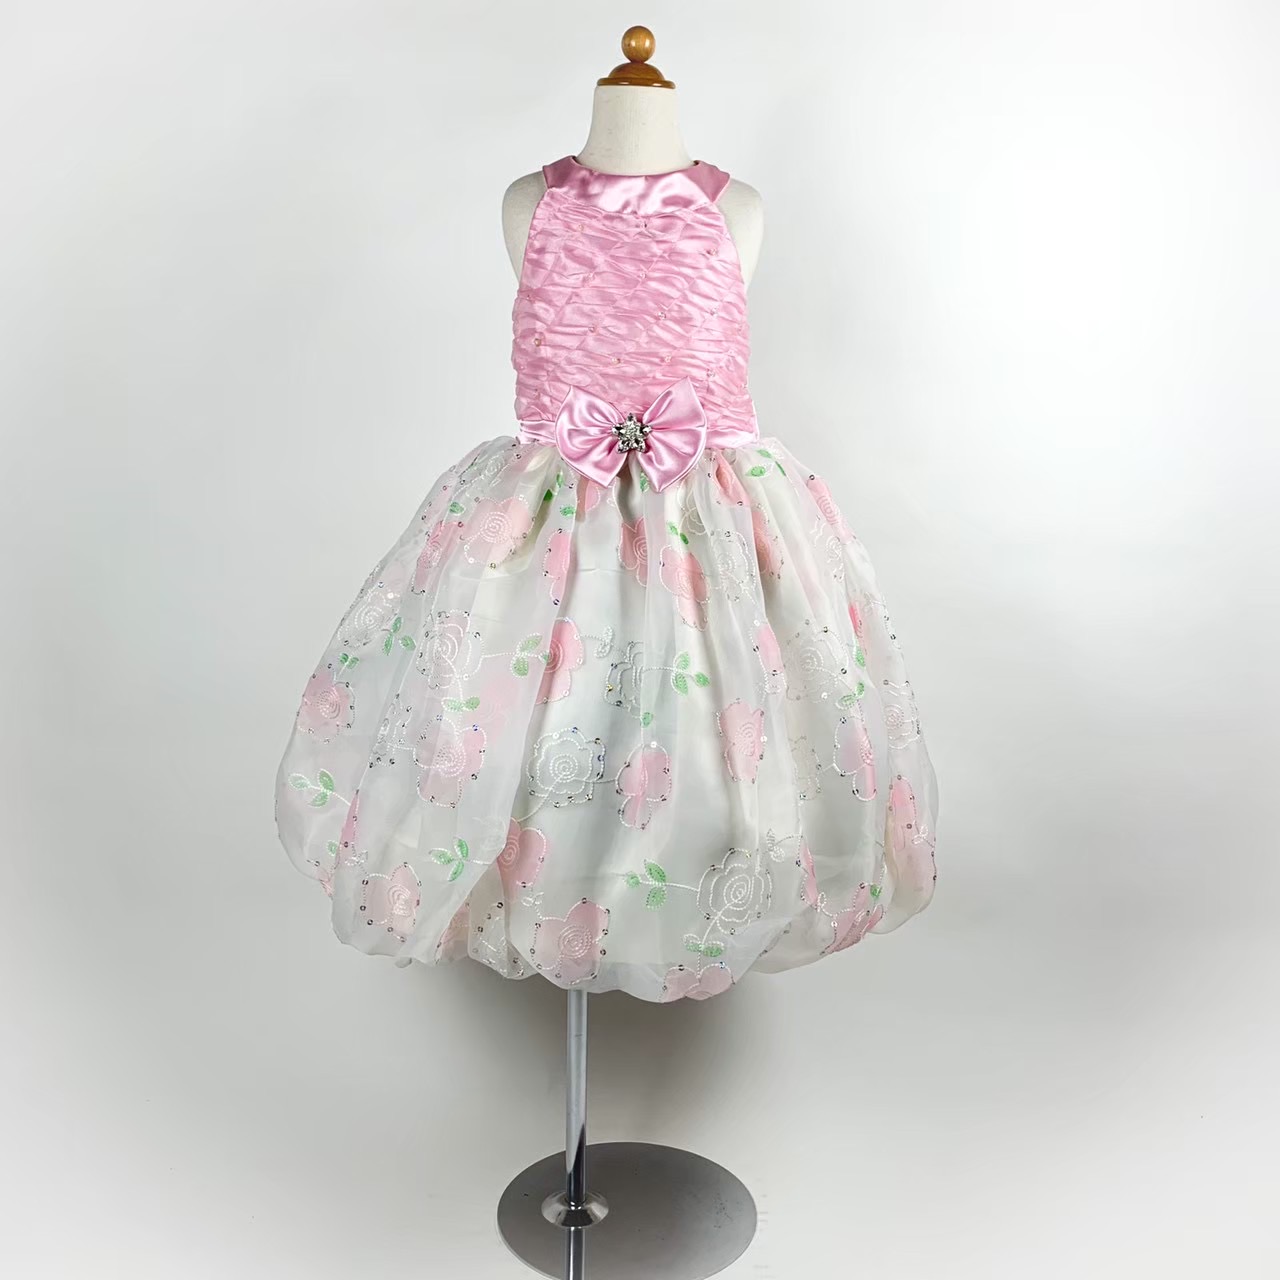 ホルターネックピンクドレス